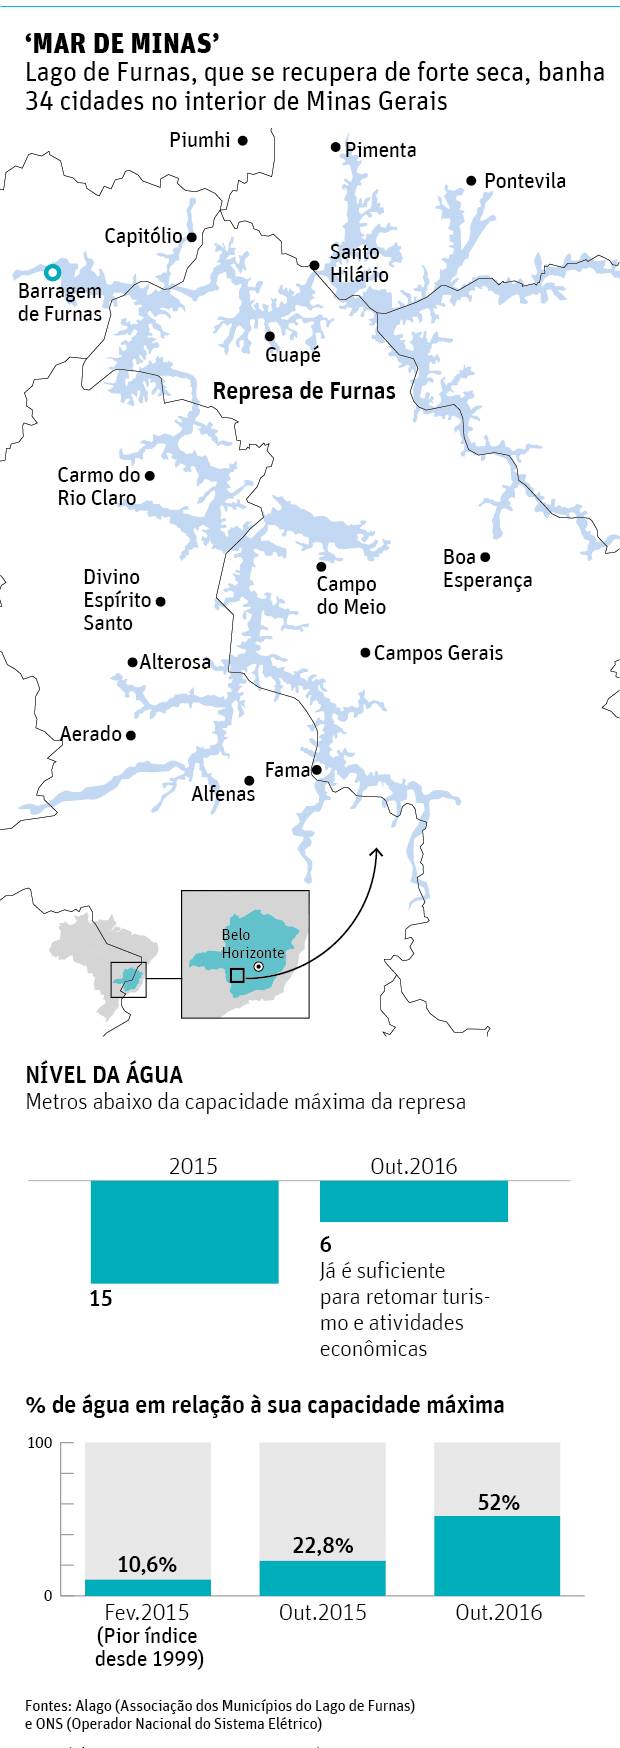 MAR DE MINAS'Lago de Furnas, que se recupera de forte seca, banha 34 cidades no interior de Minas Gerais